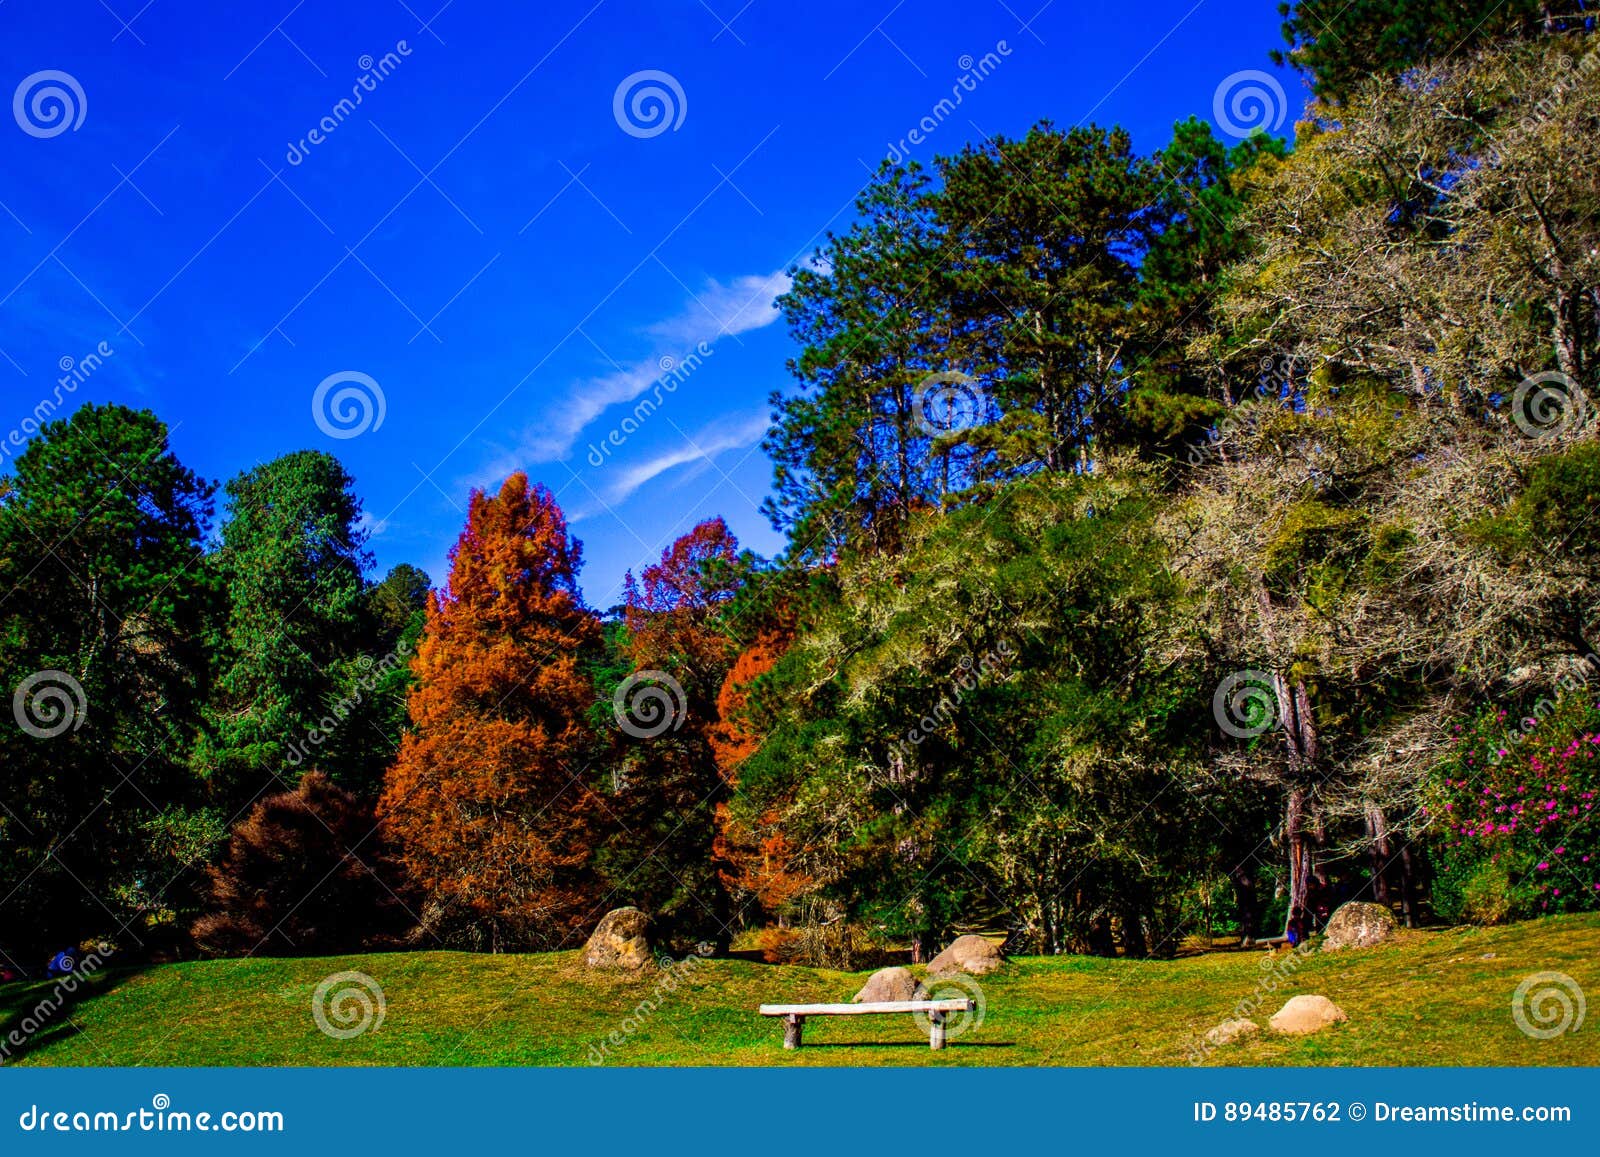 Forest Park stockfoto. Bild von landschaft, tropisch - 89485762